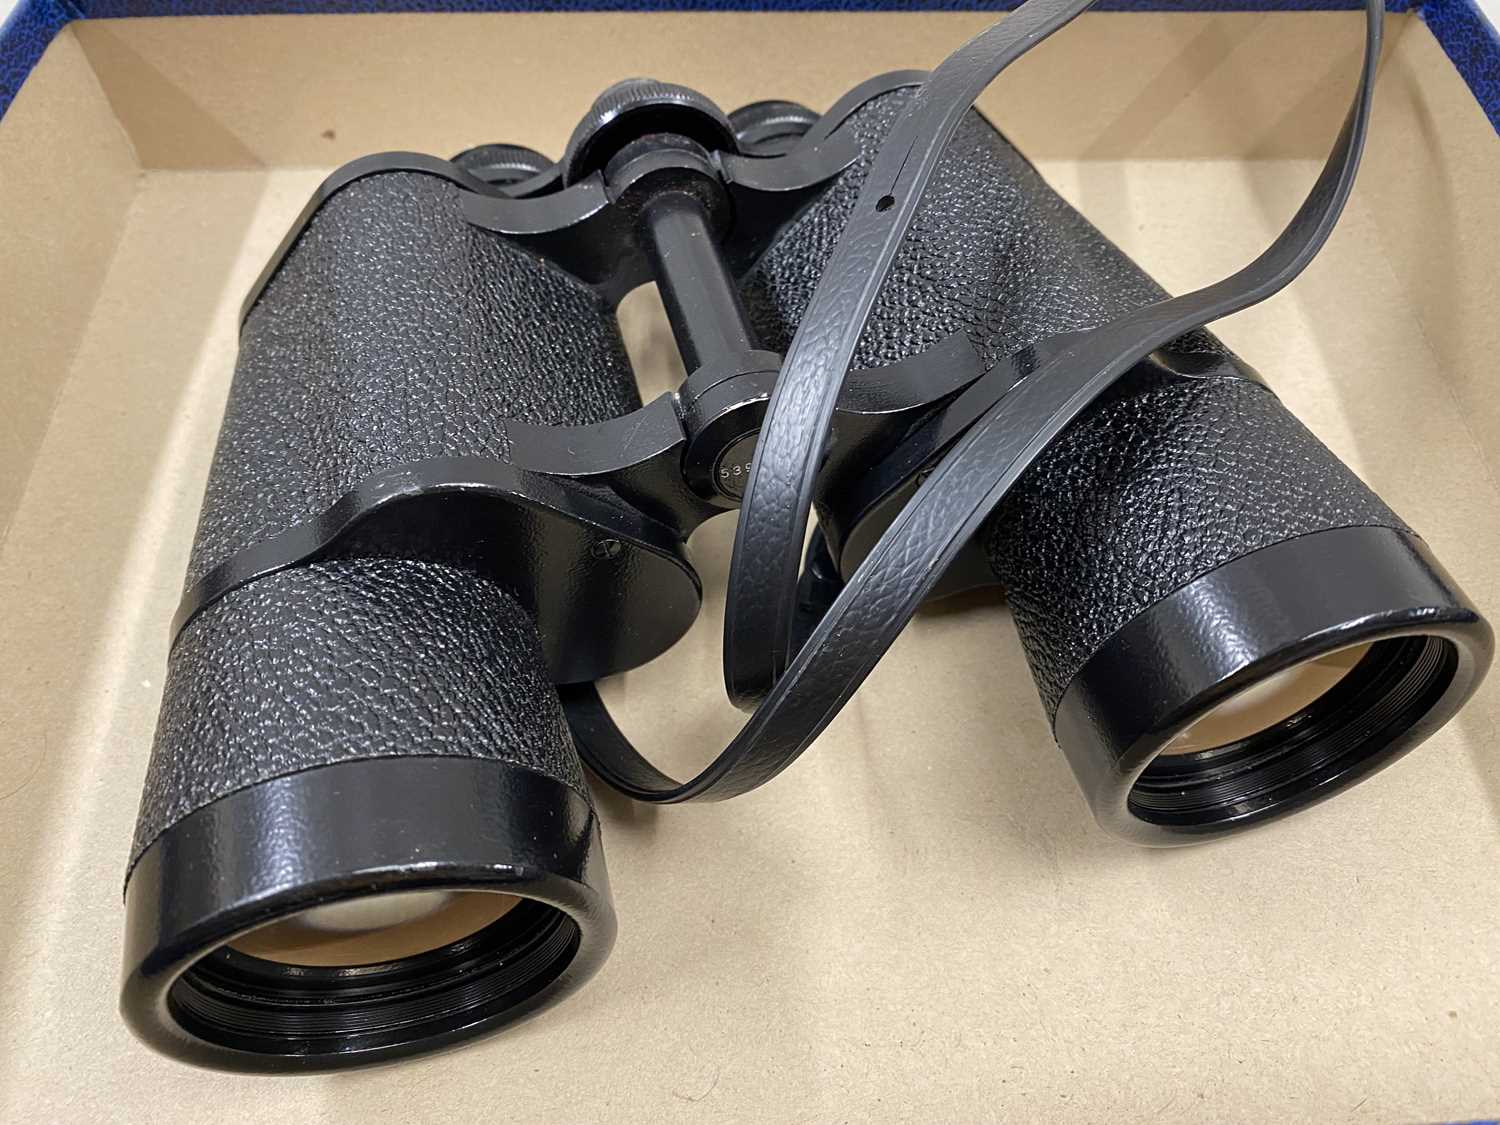 Carl Zeiss 10 x 50 binoculars